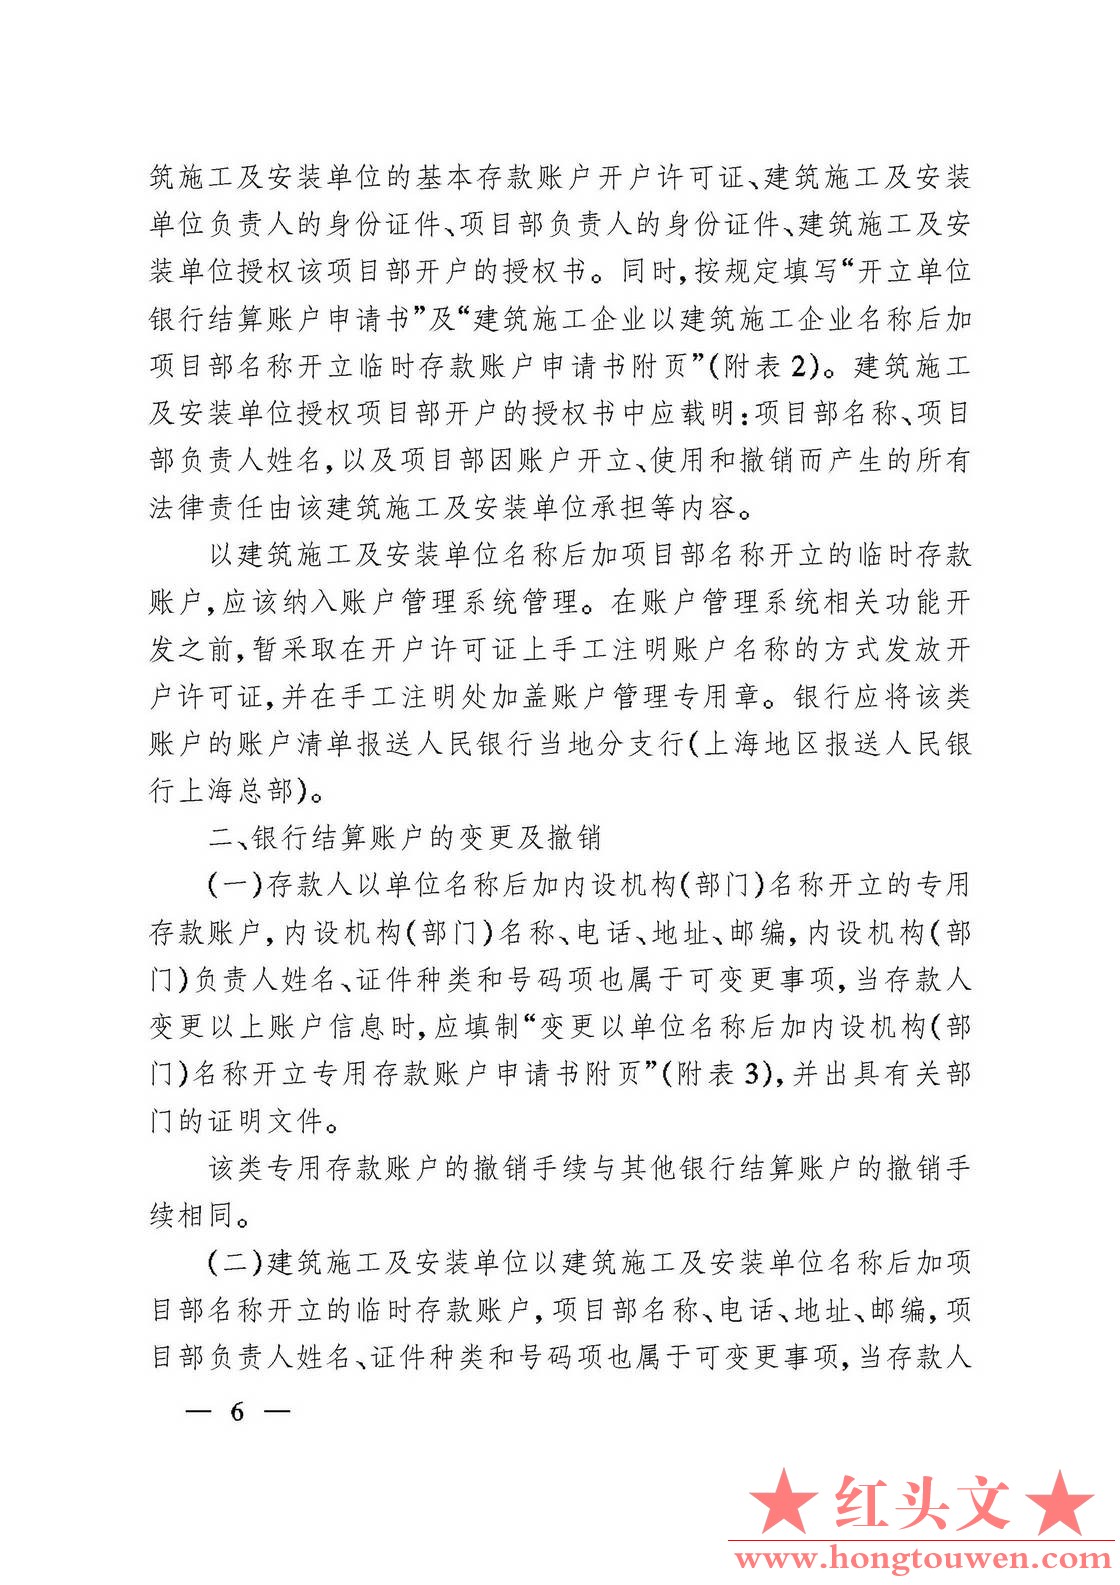 银发[2006]71号-中国人民银行关于规范人民币银行结算账户管理有关问题的通知_页面_06..jpg